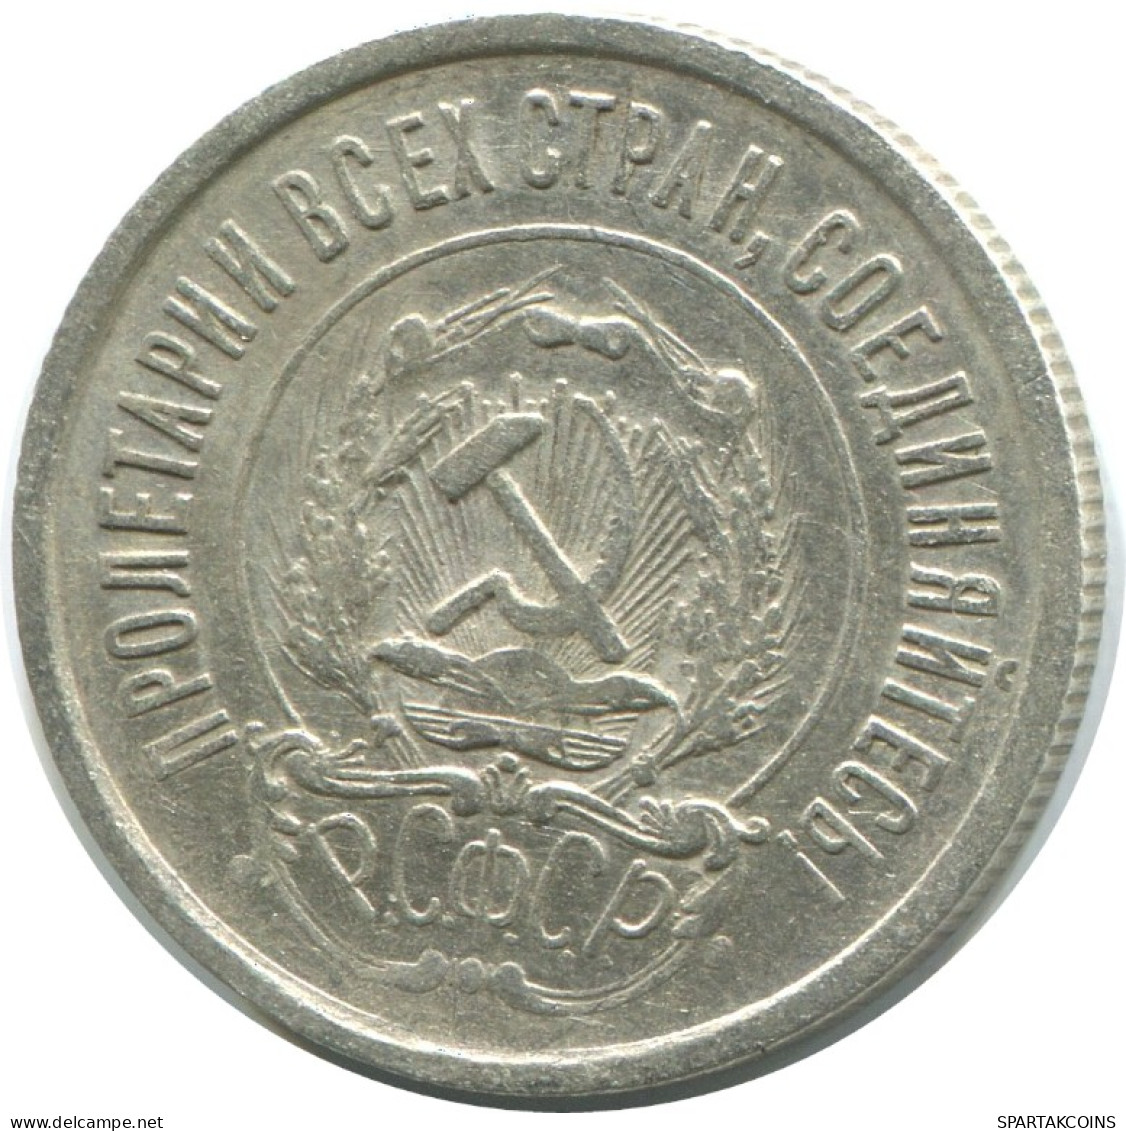 20 KOPEKS 1923 RUSSLAND RUSSIA RSFSR SILBER Münze HIGH GRADE #AF408.4.D.A - Russia